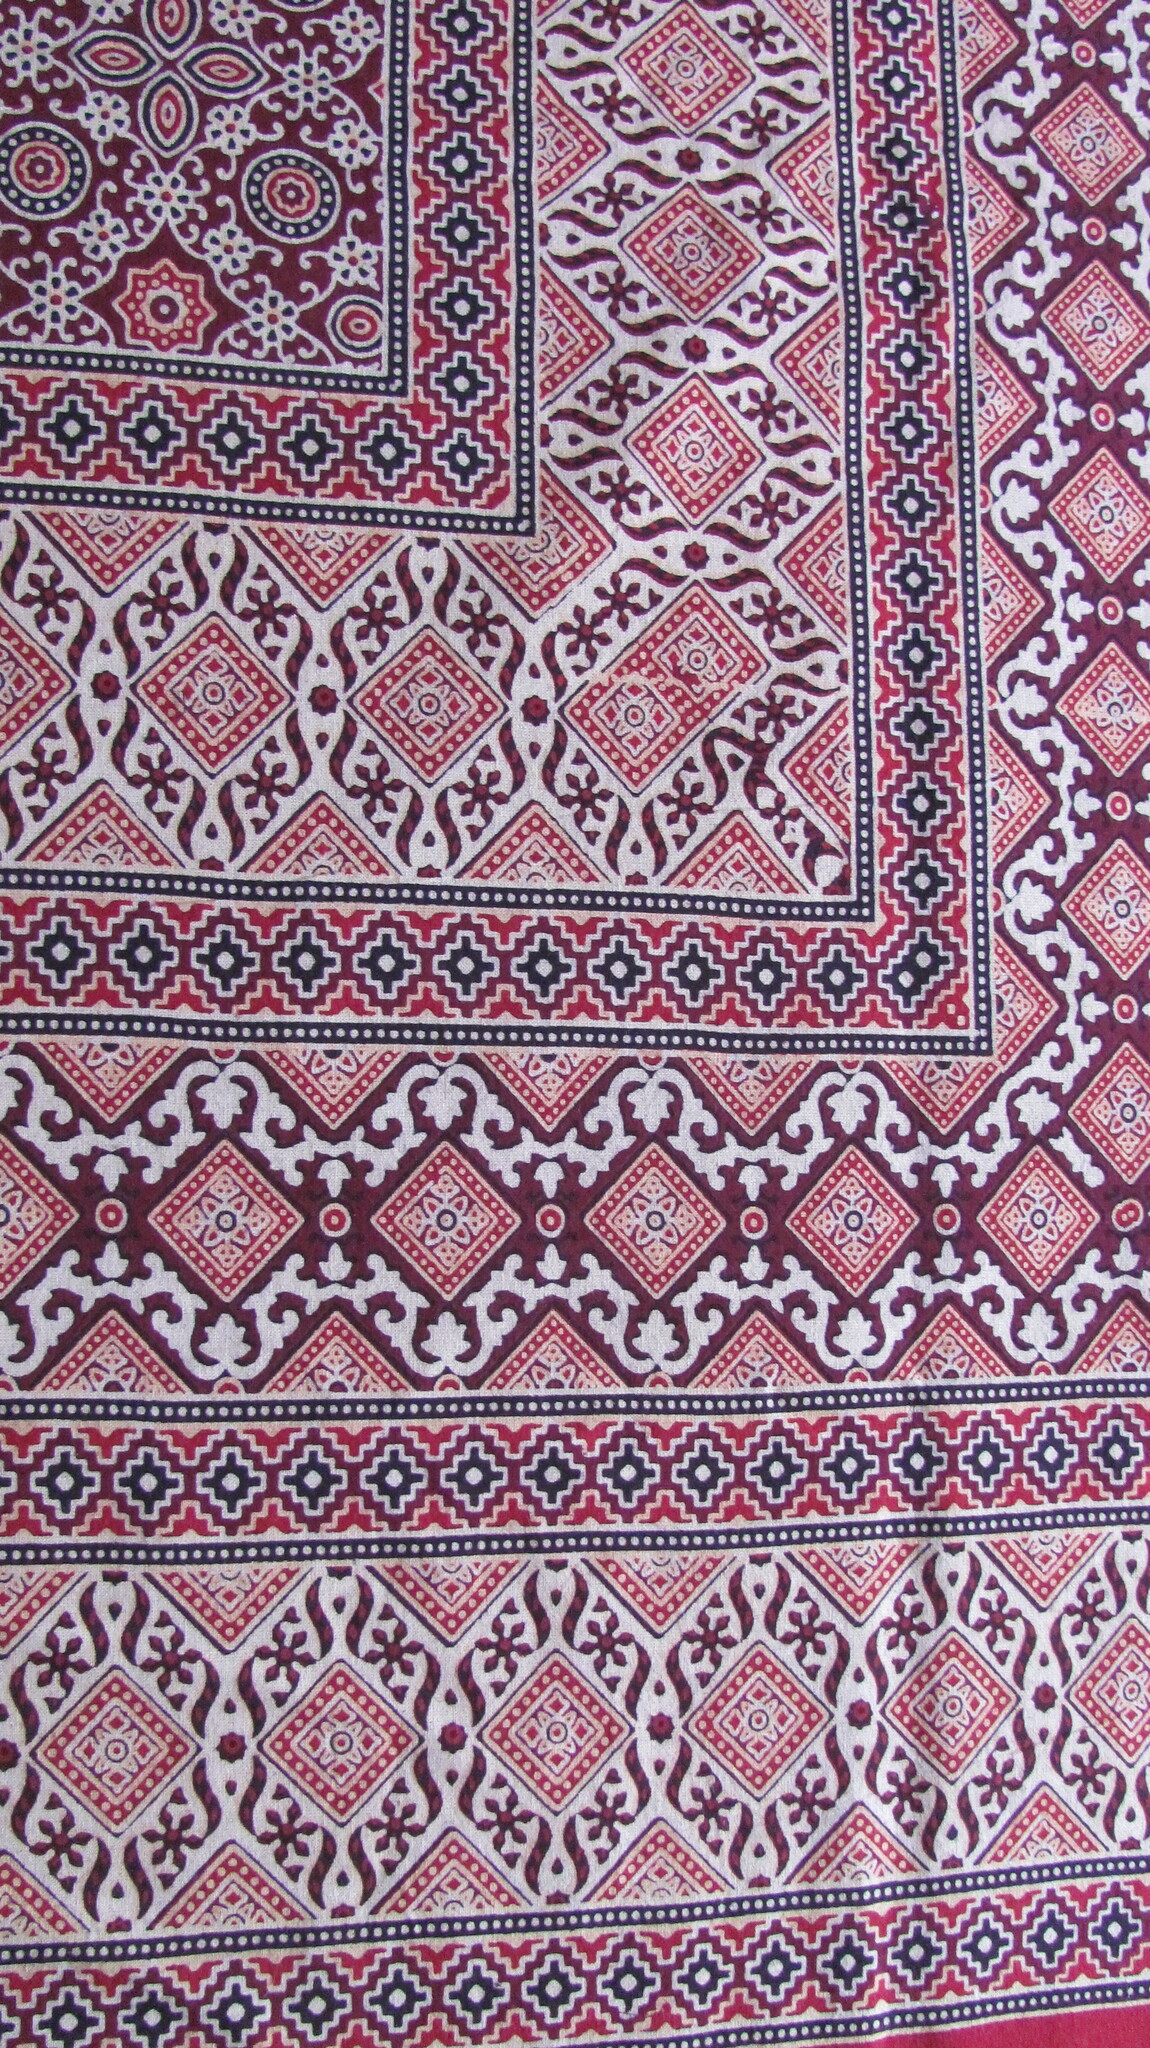 Bedsheet Ajrak printed, grand foulard